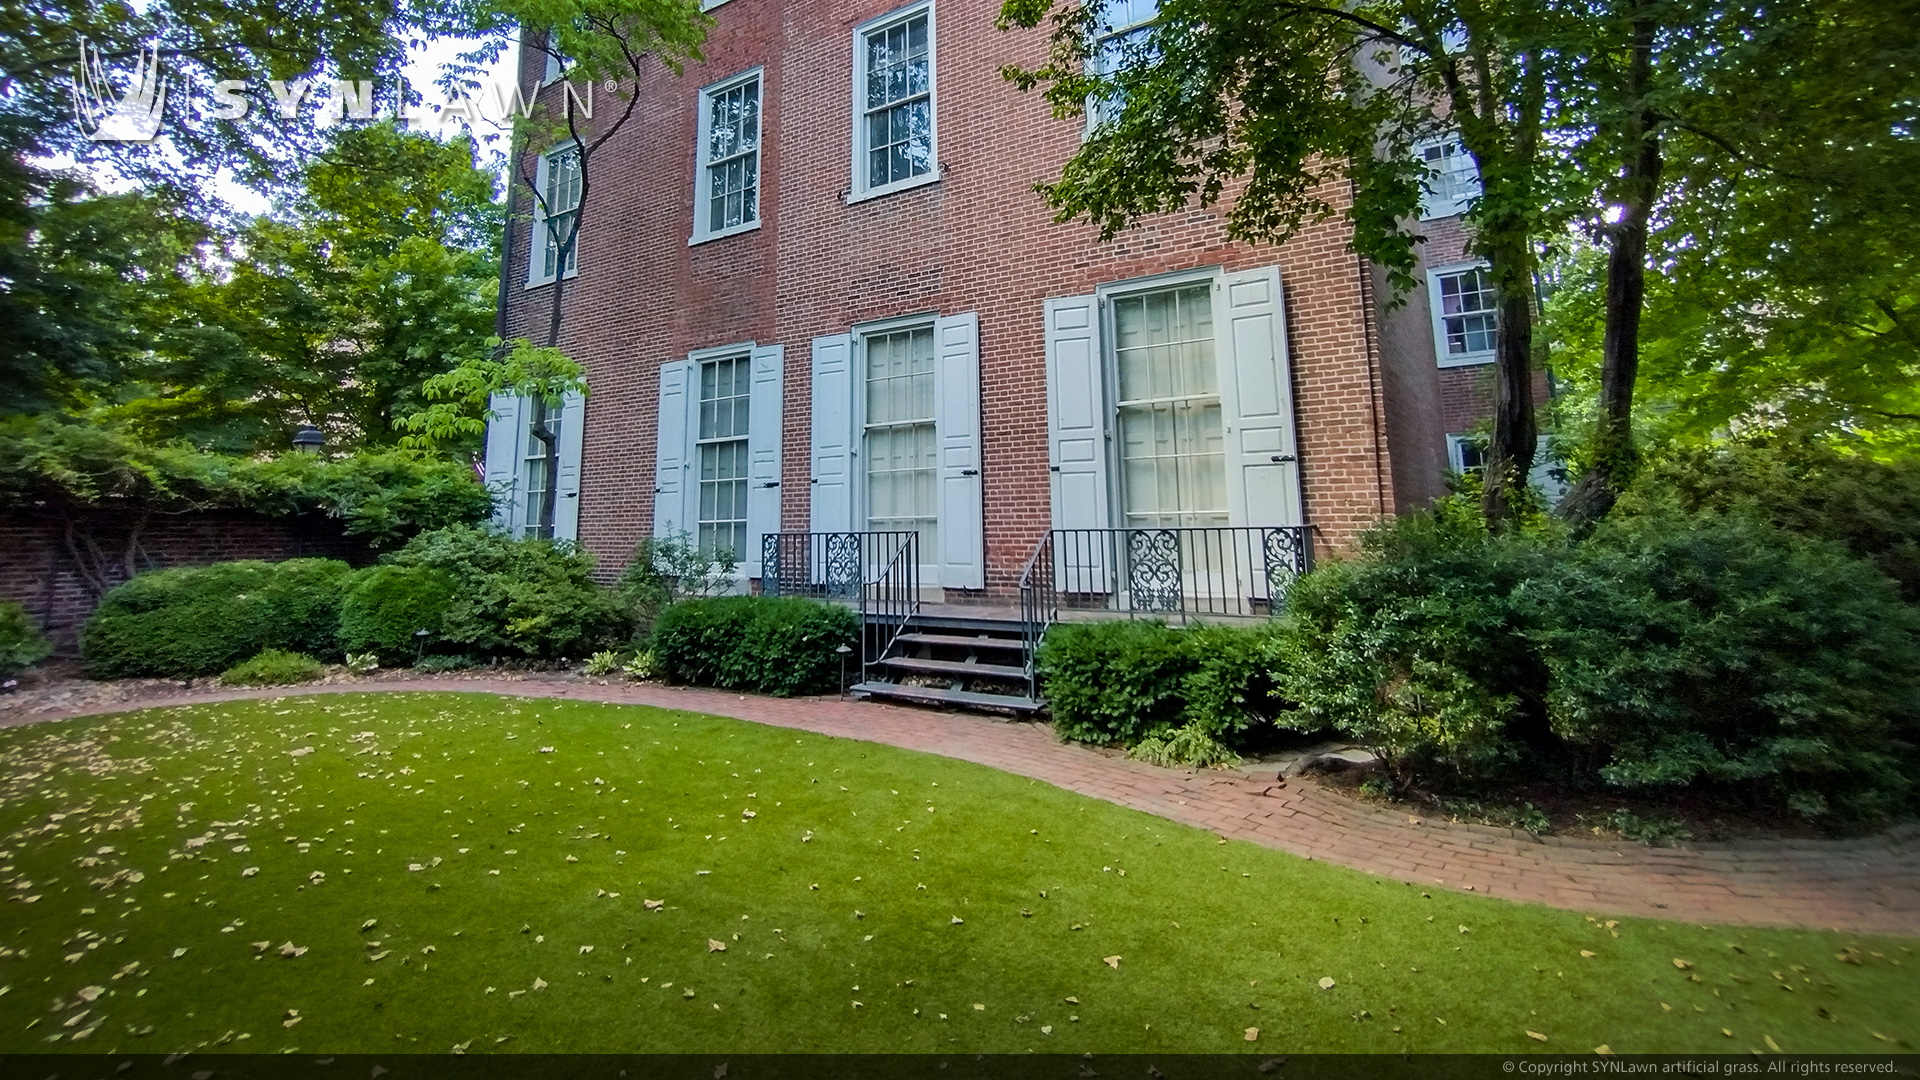 Устойчивое развитие SYNLawn помогает сохранить исторический дом Hill-Physick House в Филадельфии.